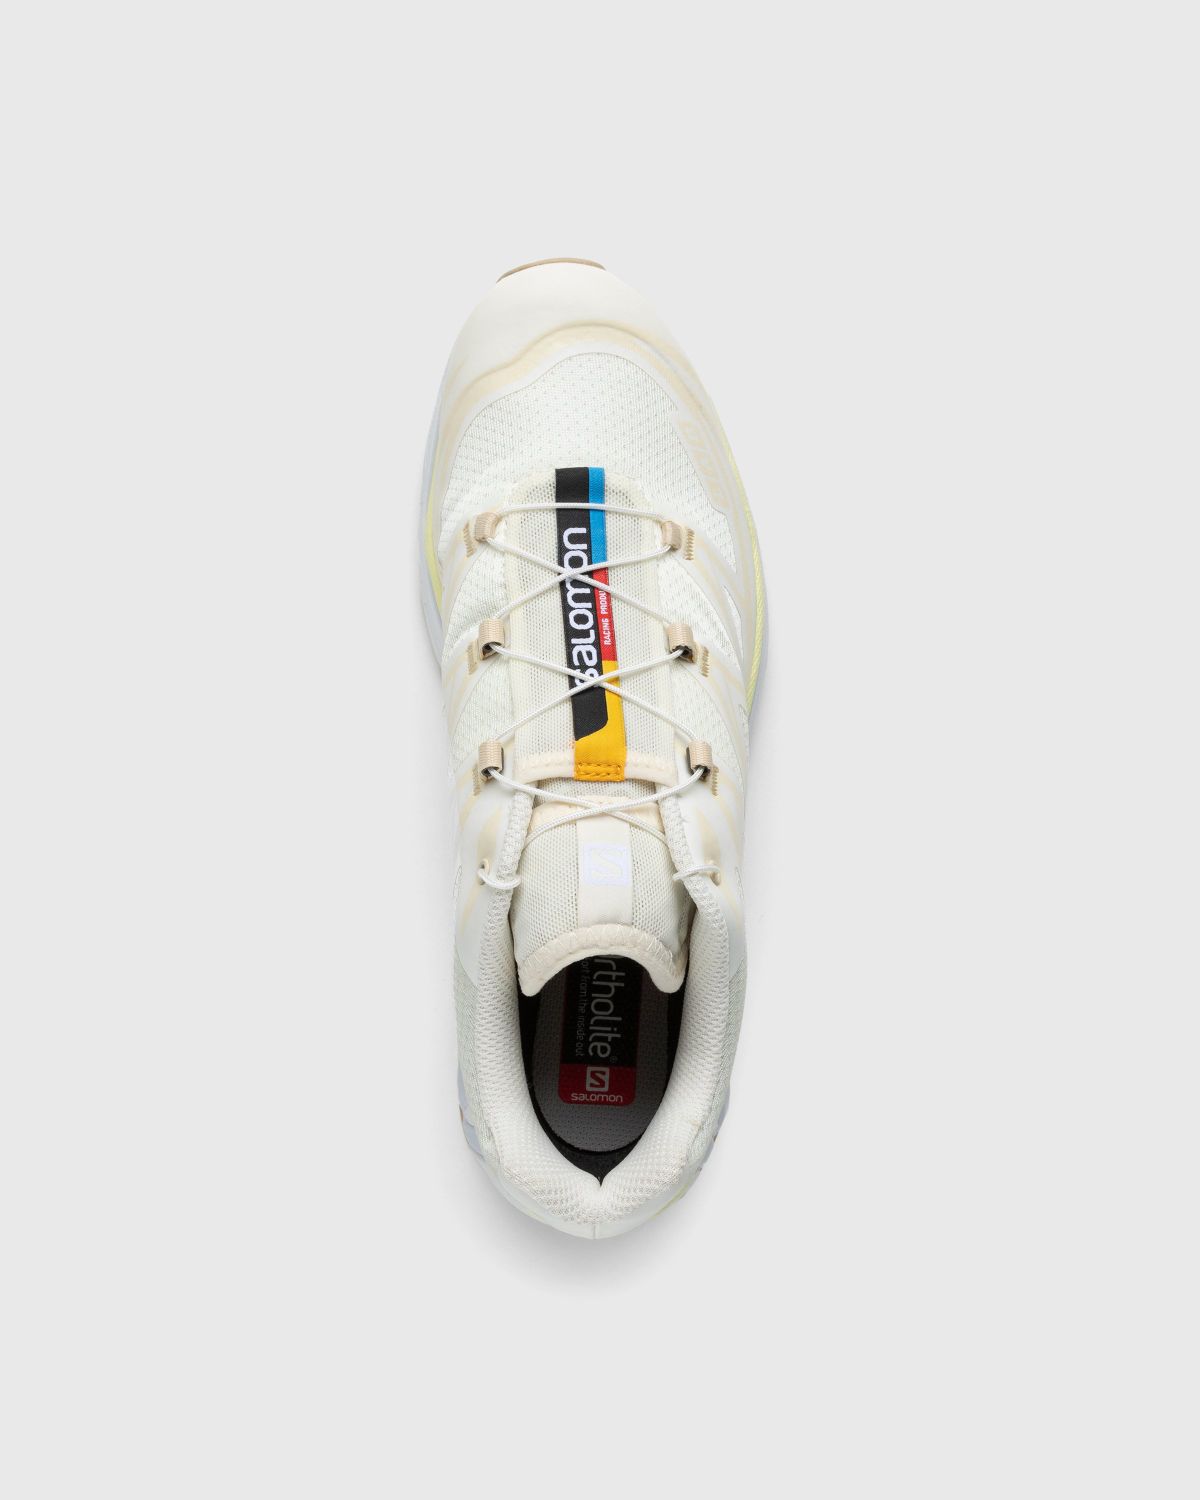 Salomon – XT-6 Vanilla Ice - Low Top Sneakers - Beige - Image 5